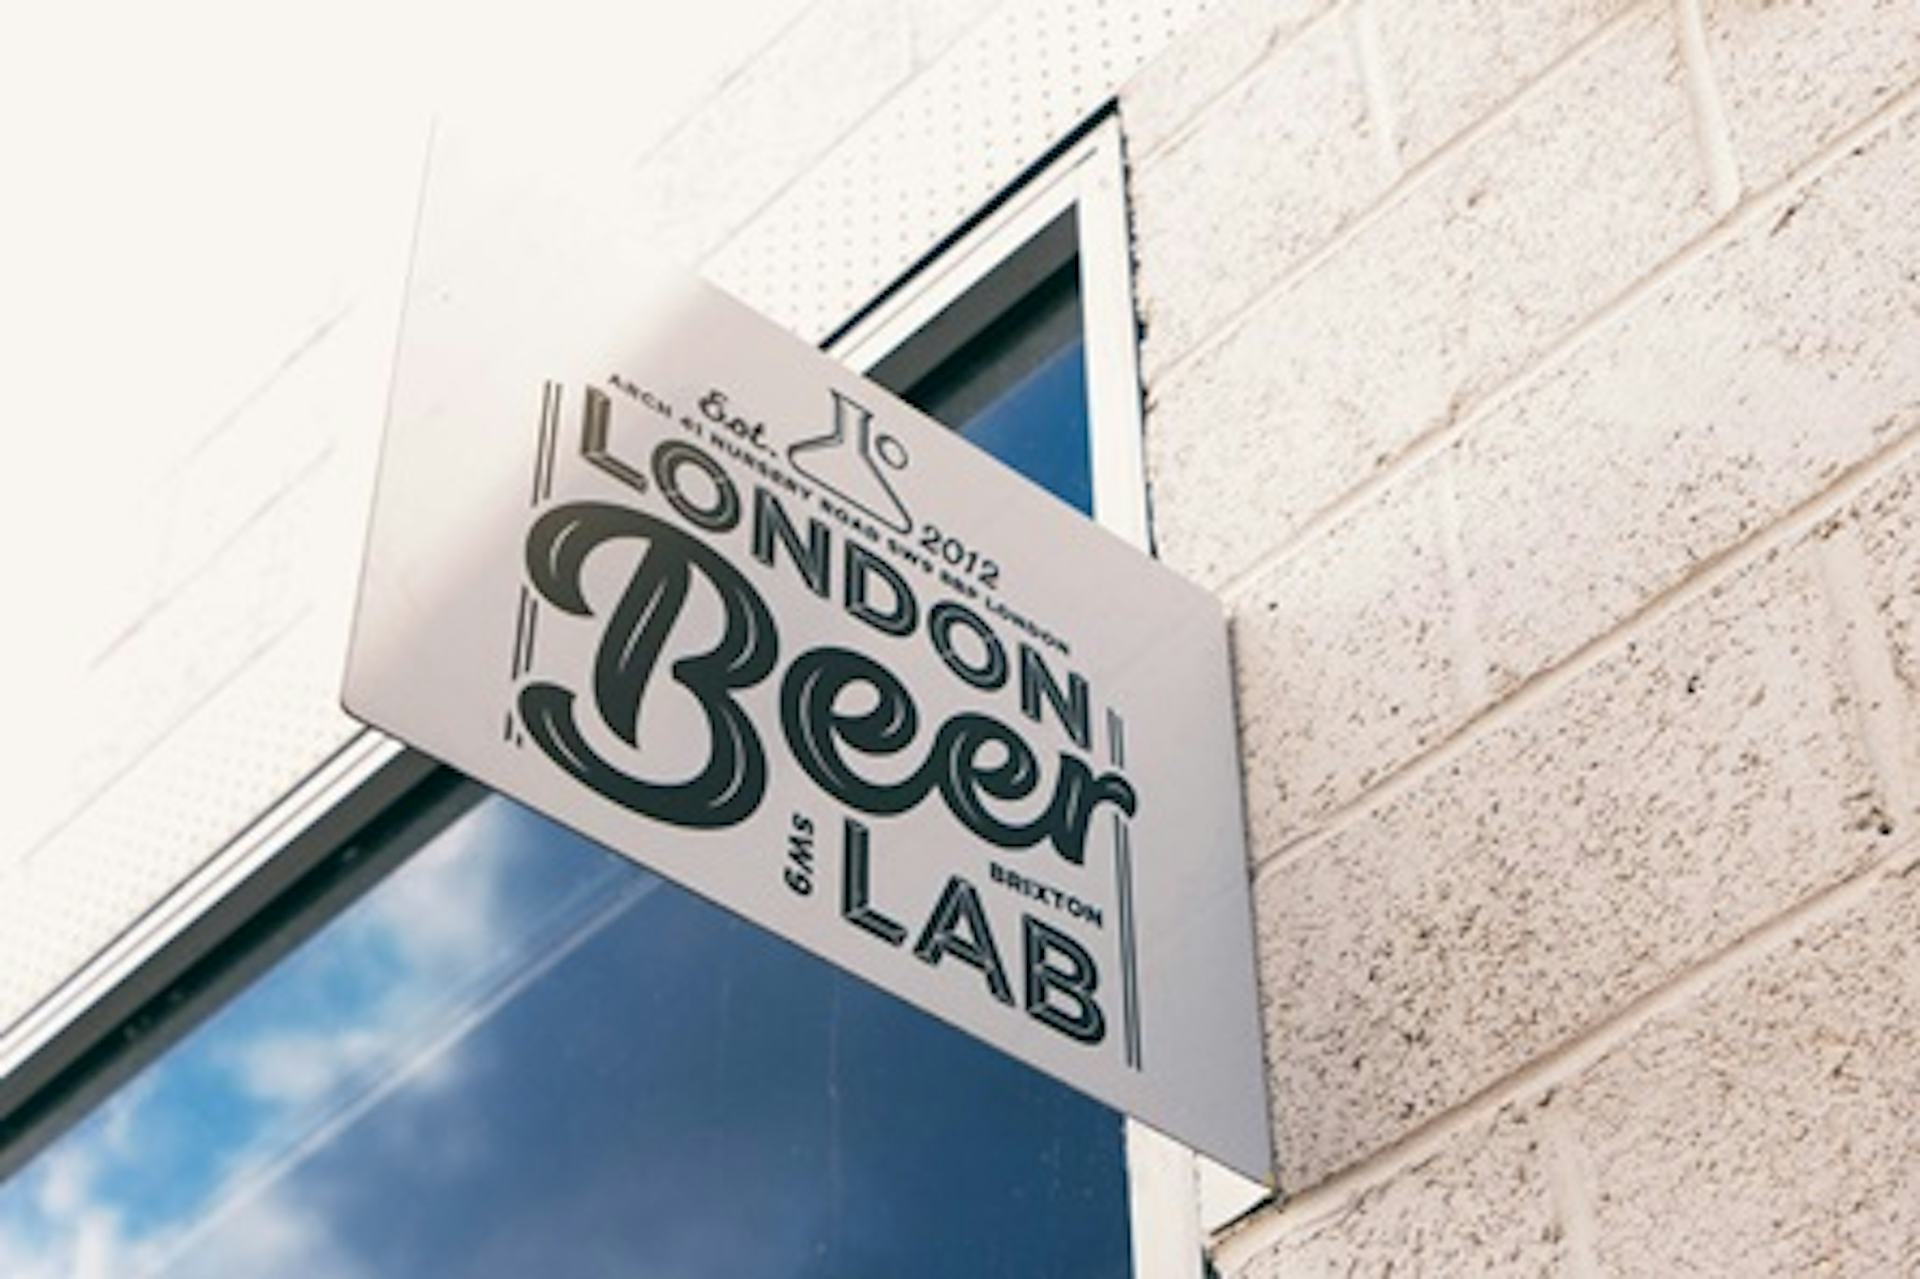 Beer Making Workshop and Tasting at London Beer Lab